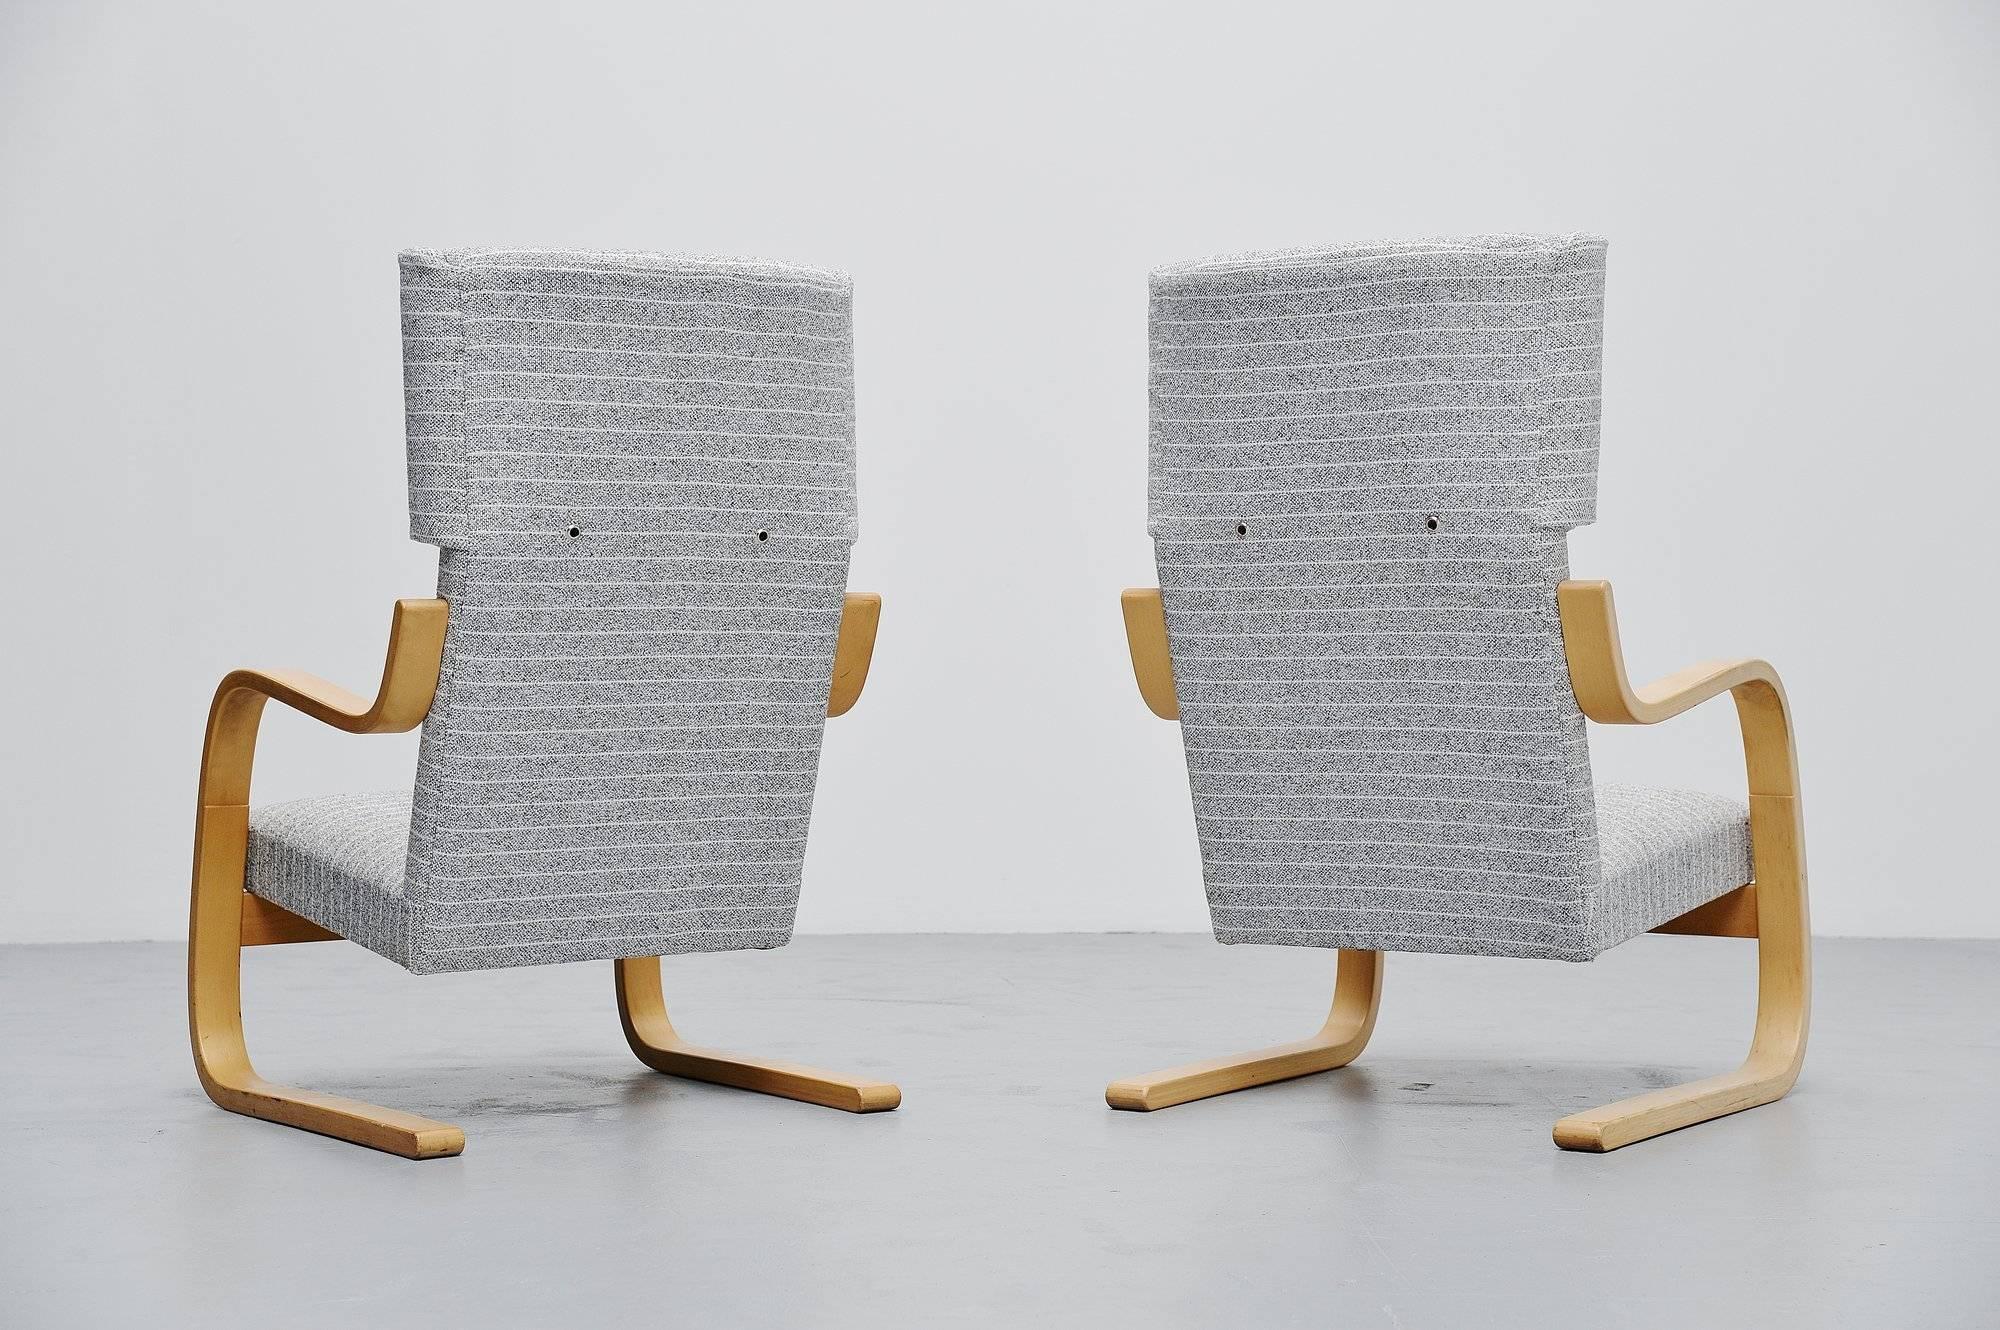 Elegantes Paar Ohrensessel Modell 401, entworfen von Alvar Aalto für Artek, Finnland, 1933. Diese Stühle wurden in den 1970er Jahren bei Metz und Co. gekauft. Die Stühle haben ein Gestell aus Birkensperrholz und sind neu mit hellgrauem, gestreiftem